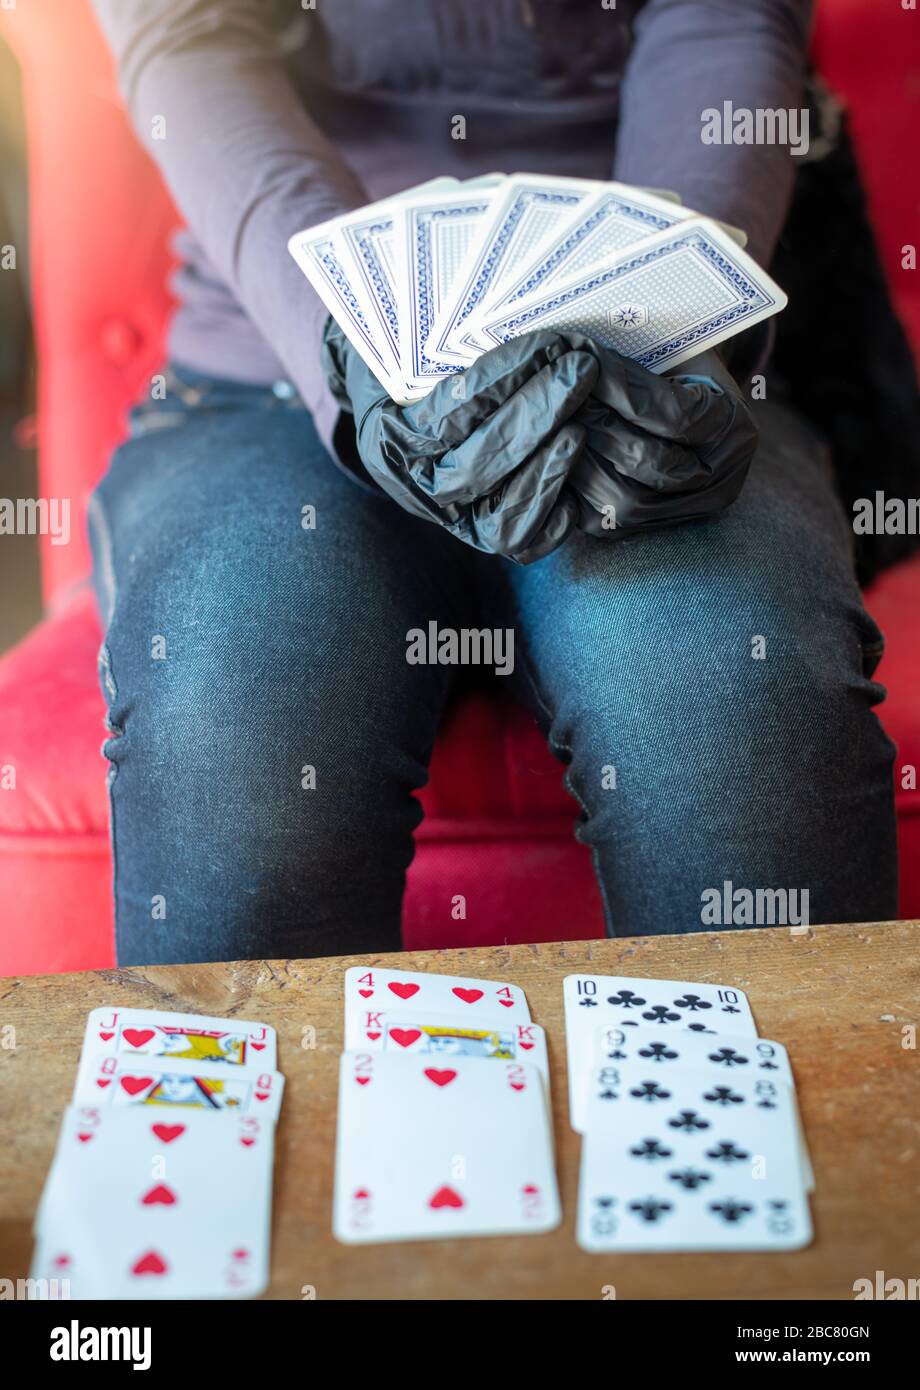 Junge Frau, die allein zu Hause Karten spielt, trägt medizinische Handschuhe, Solitare, Geduld. Stockfoto